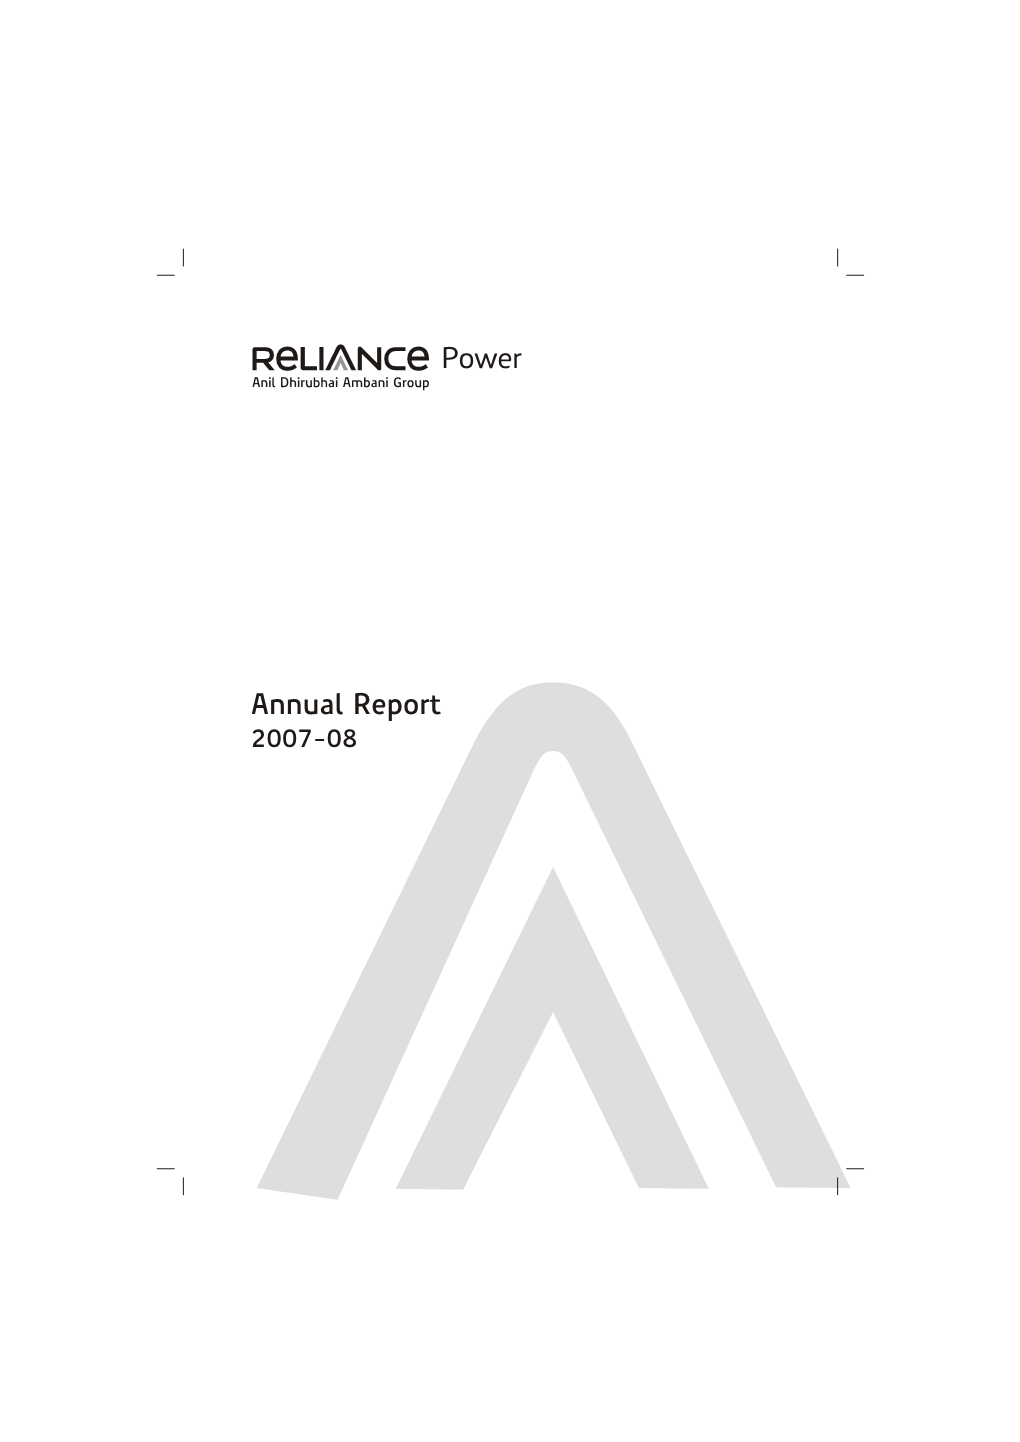 Annual Report 2007-08 Profile